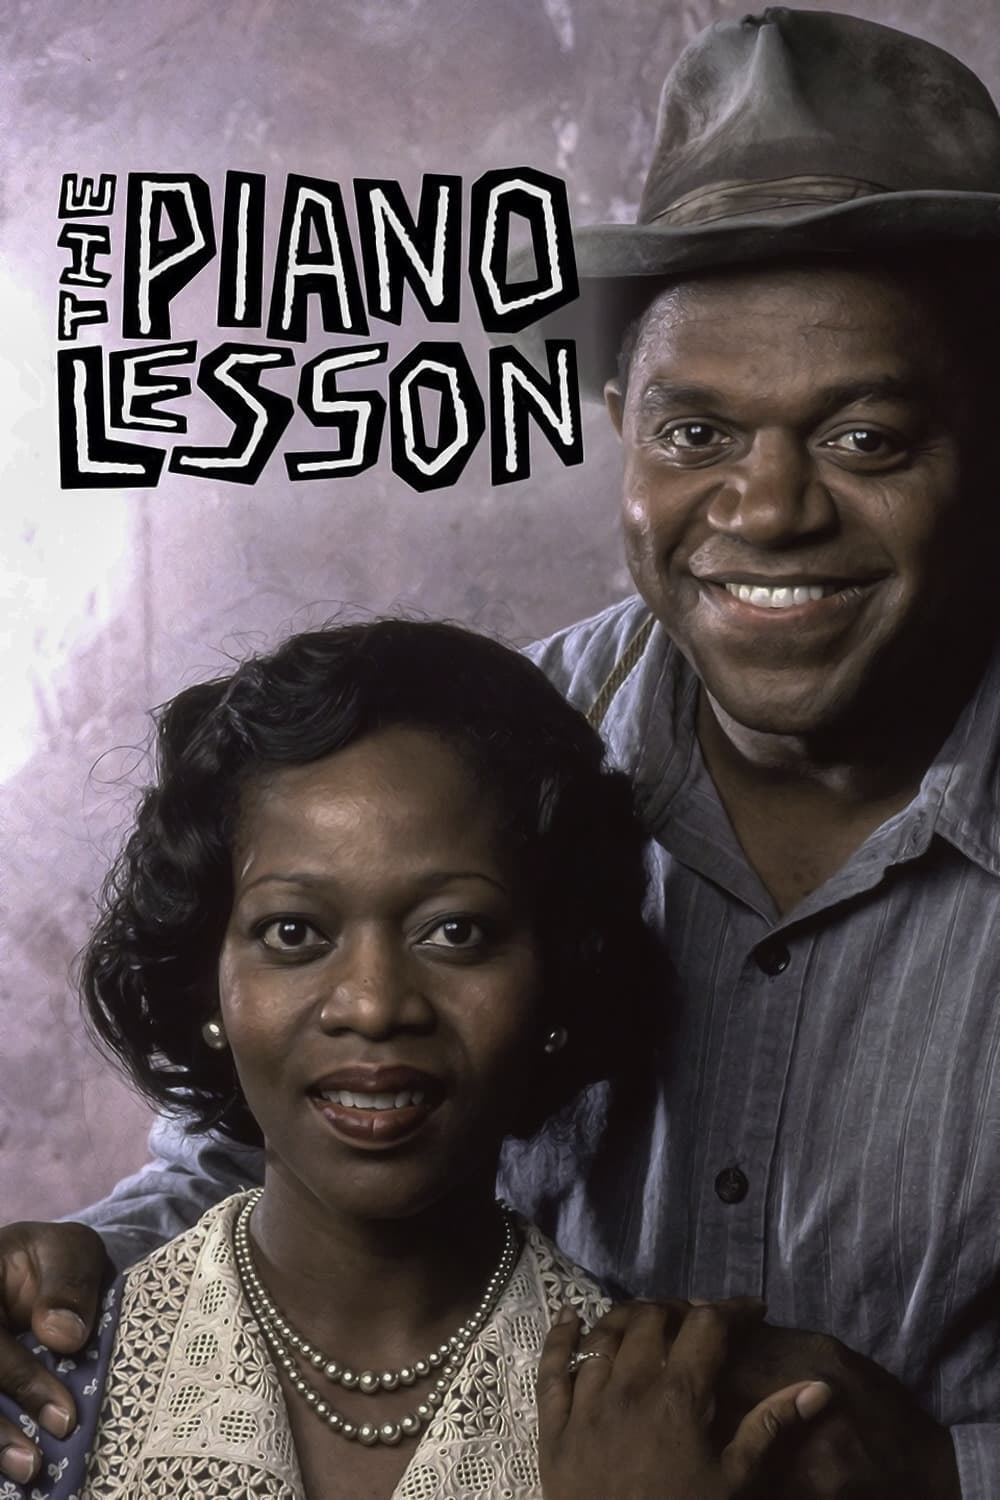 The Piano Lesson (1995)